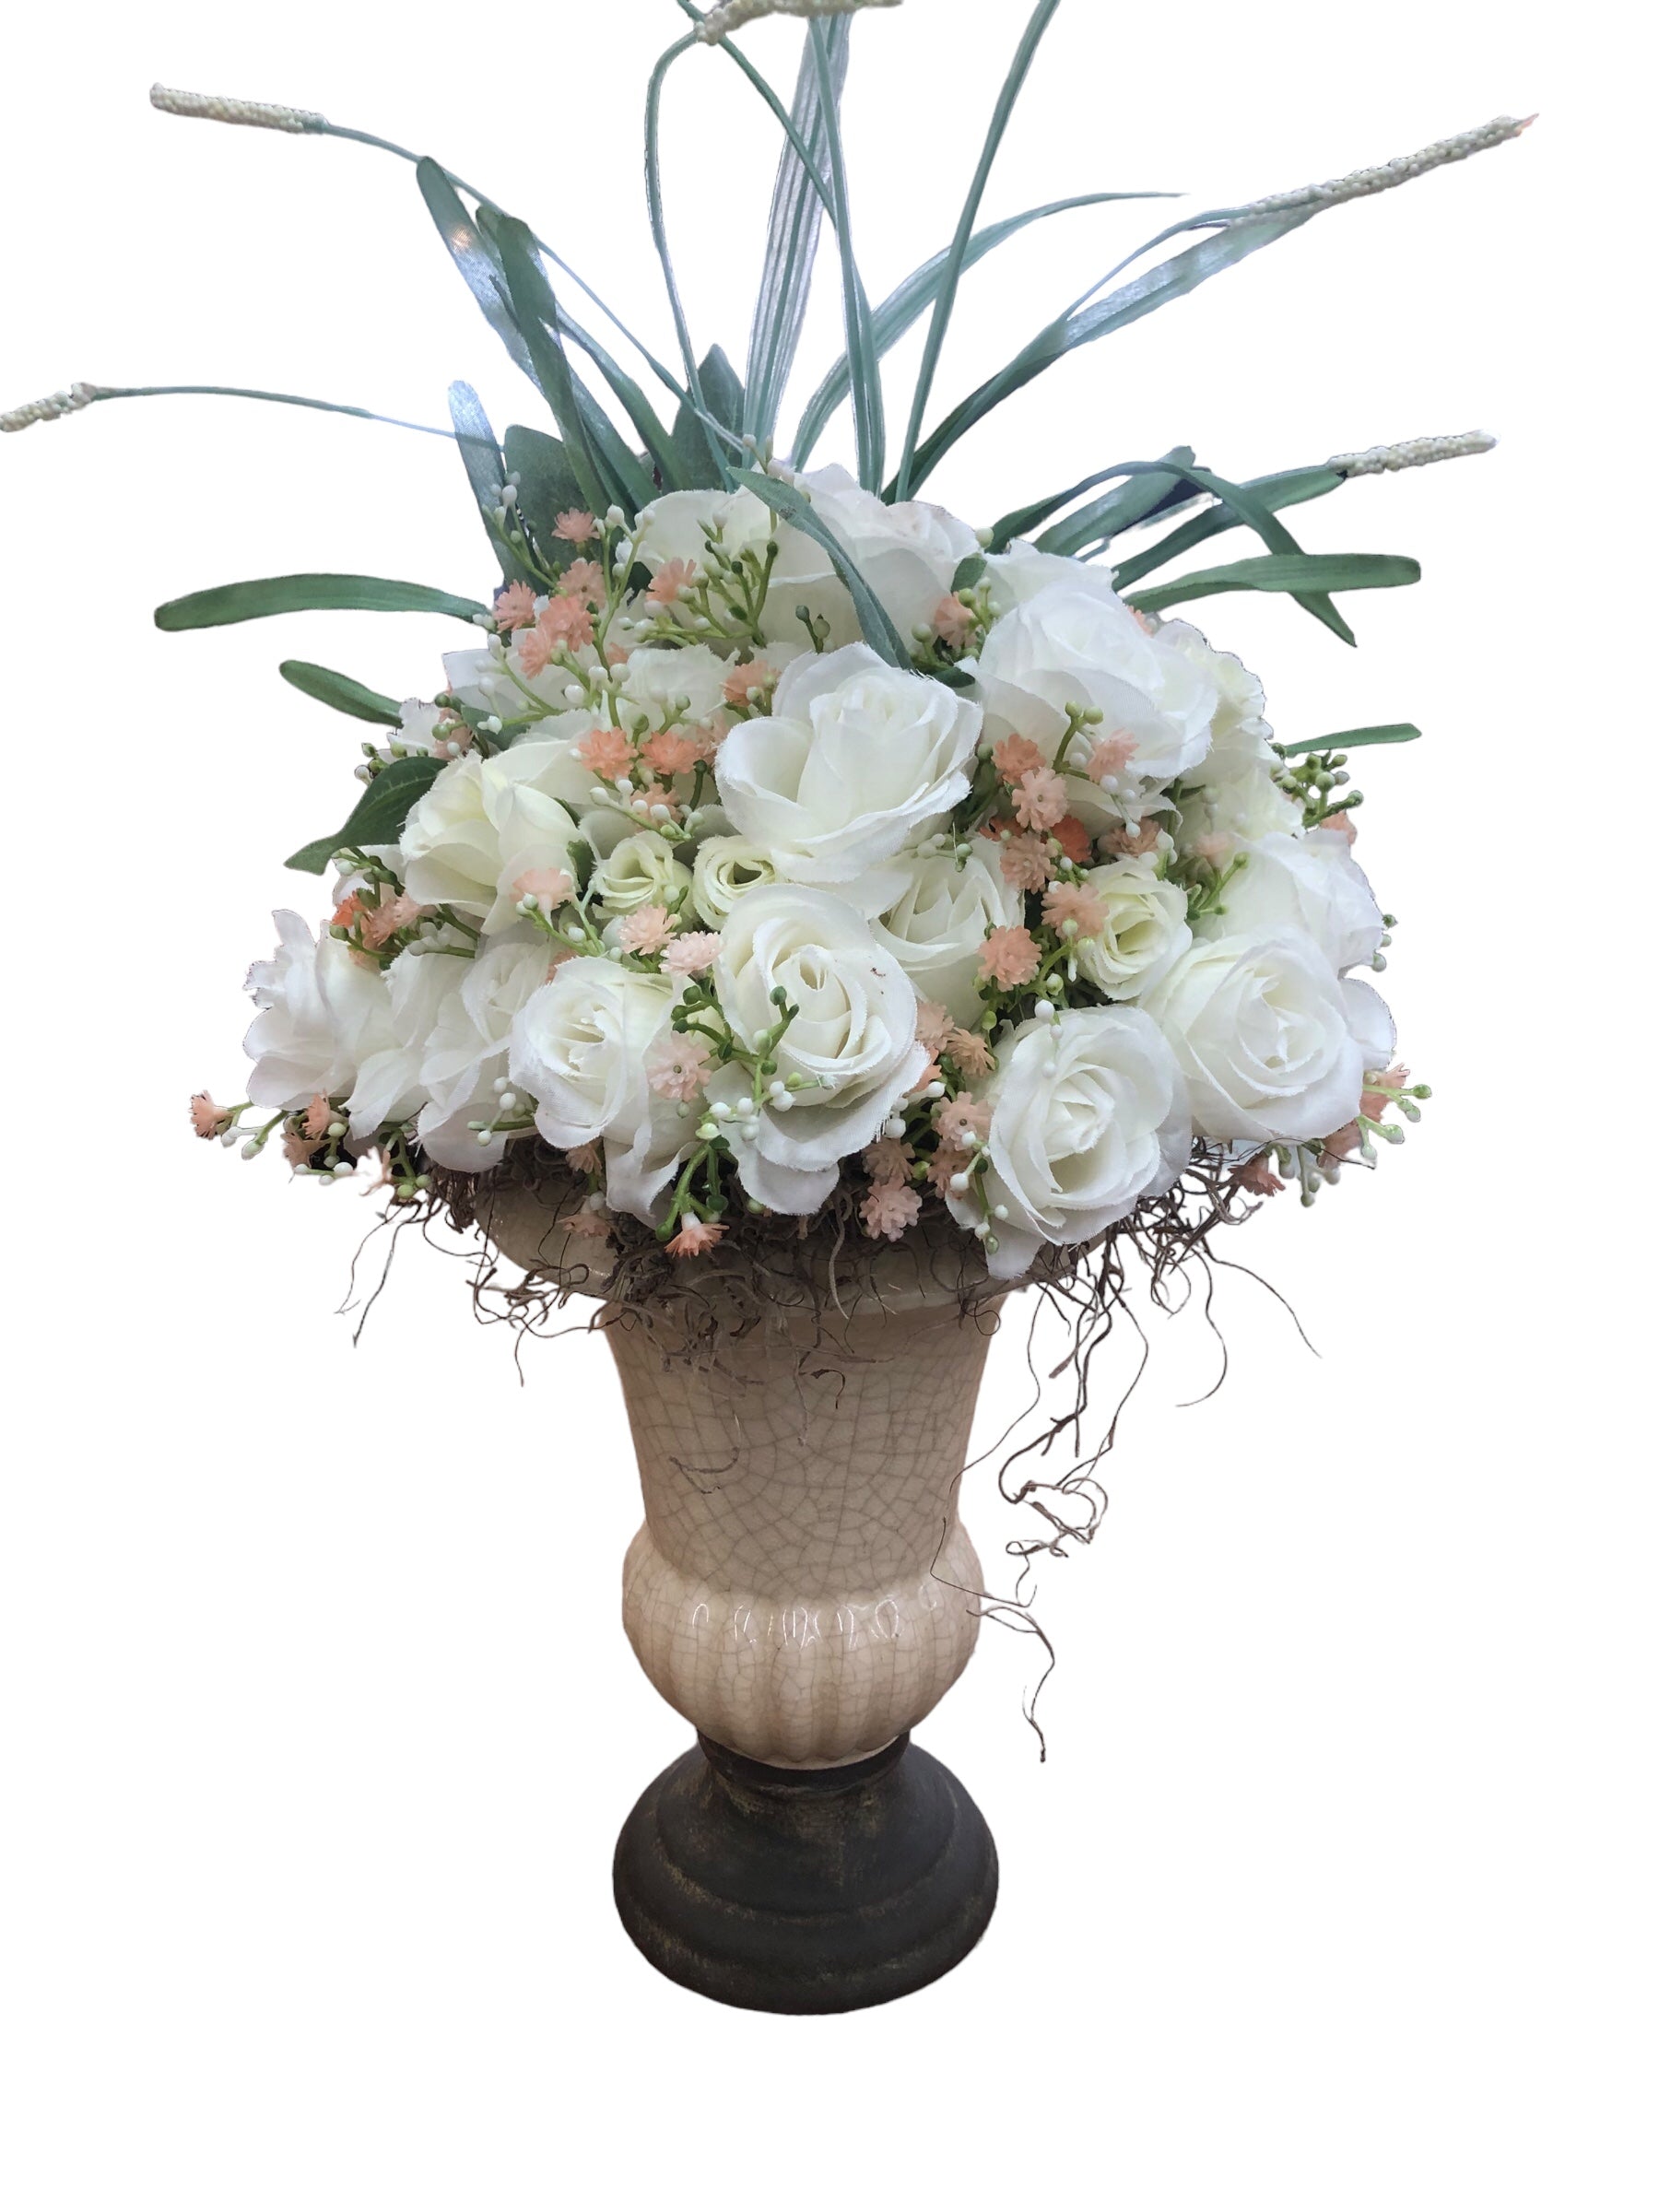 Lg. Brown vase w/White roses